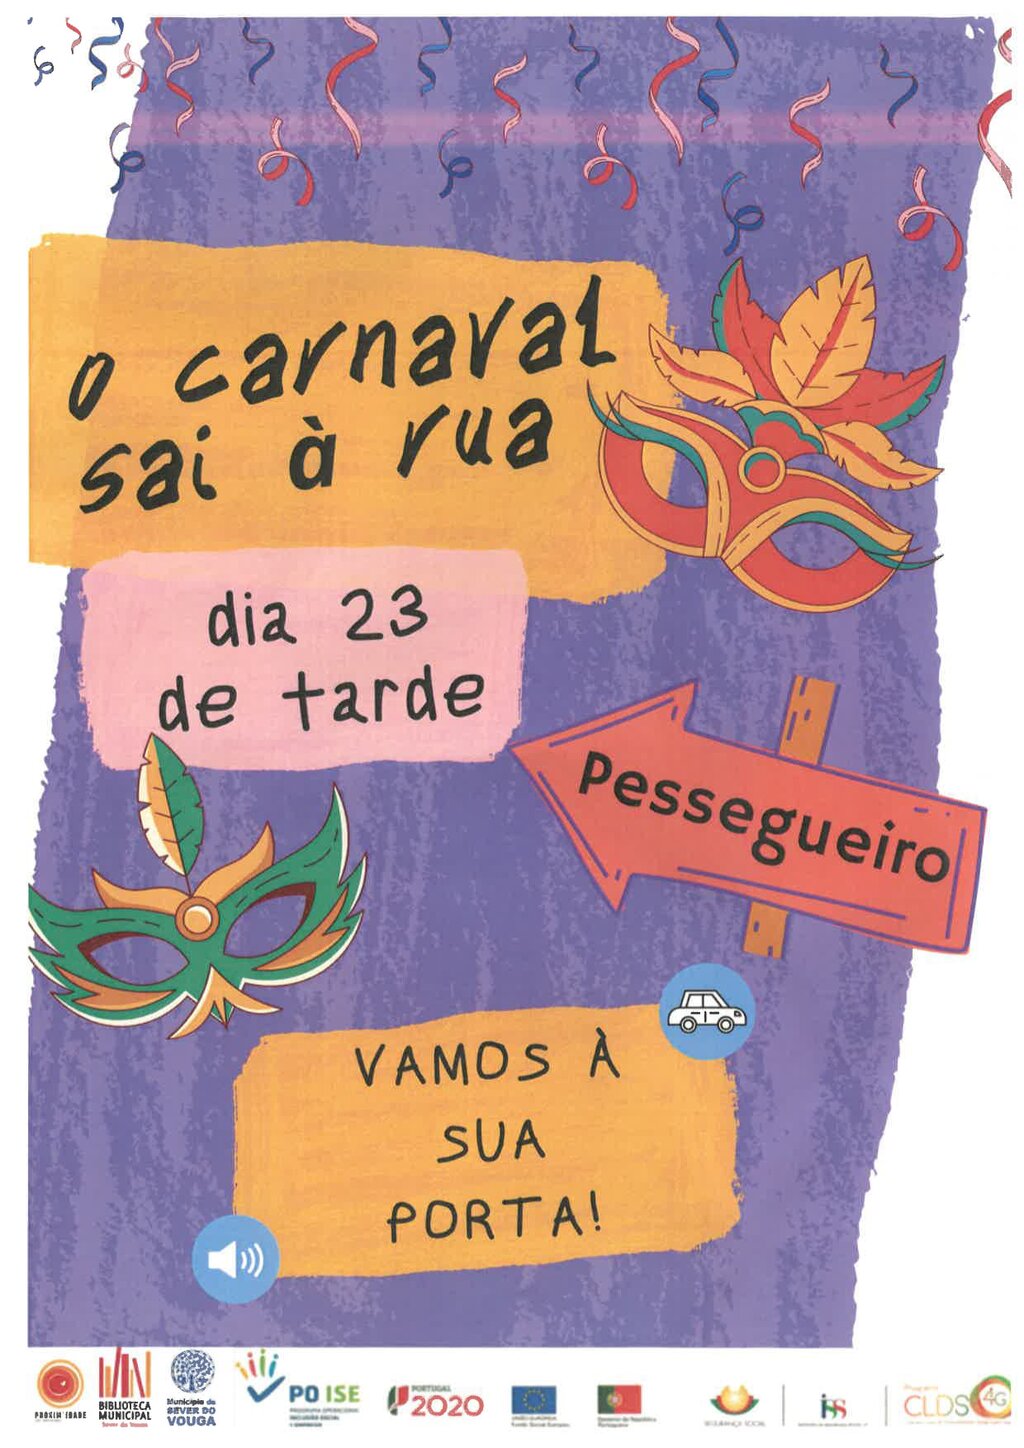 23 fevereiro - o carnaval sai à rua - passagem por Pessegueiro